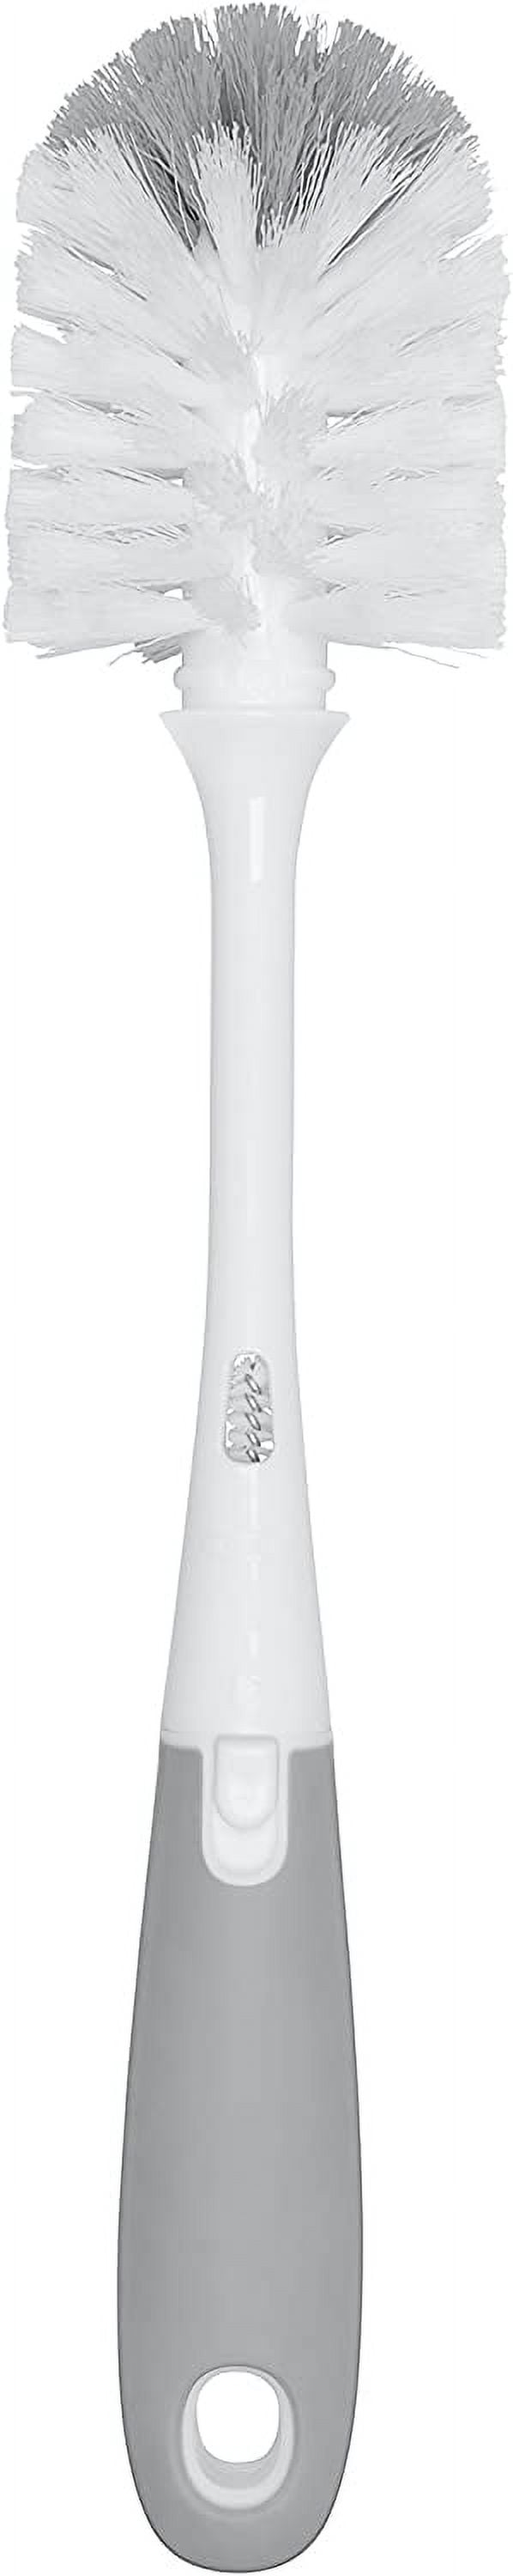 OXO Oxo Good Grips bottle brush